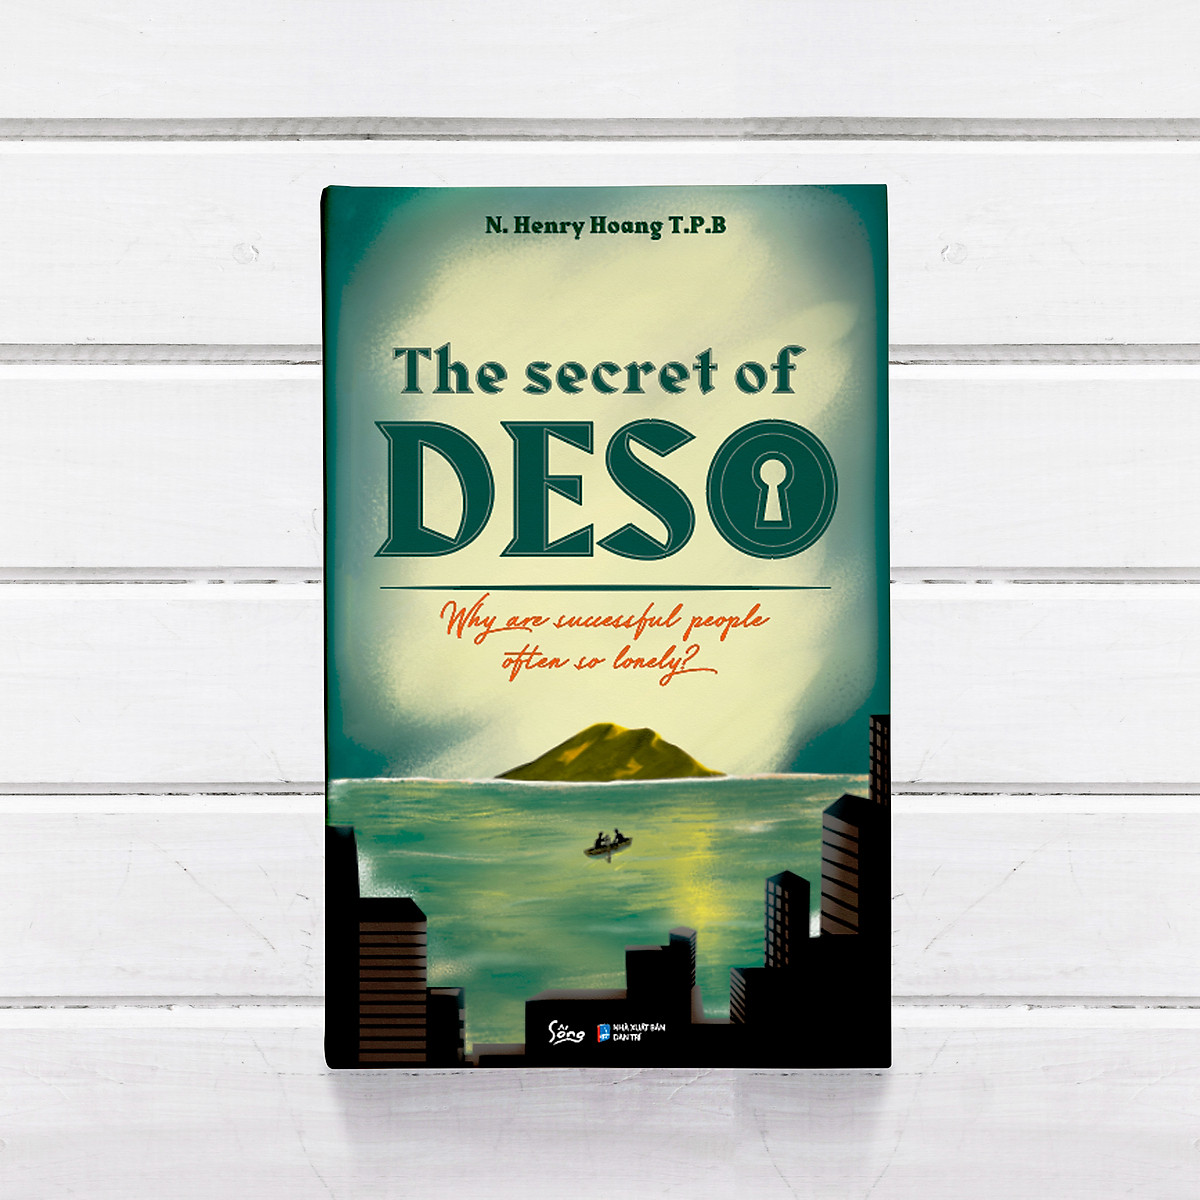 The Secret of DESO